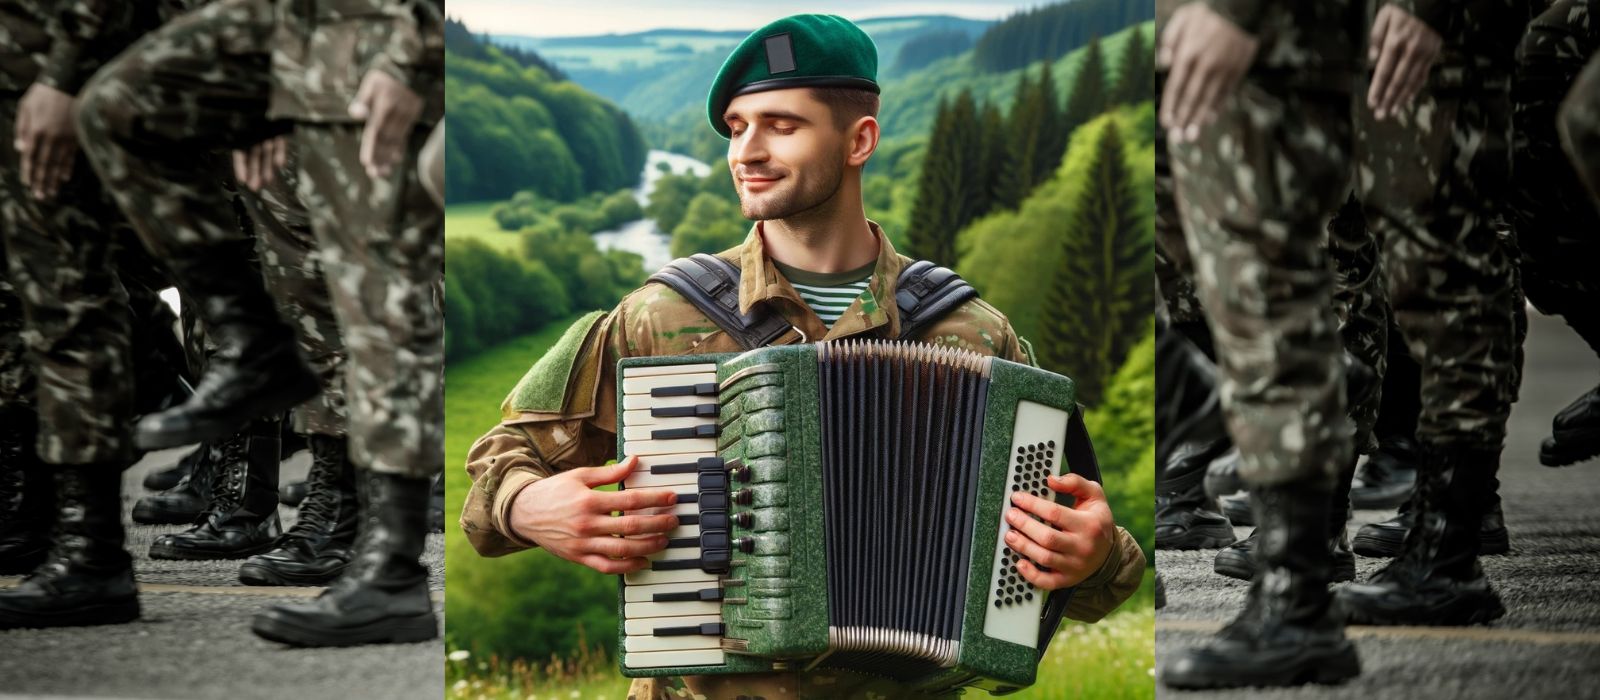 Patriotism and accordion music